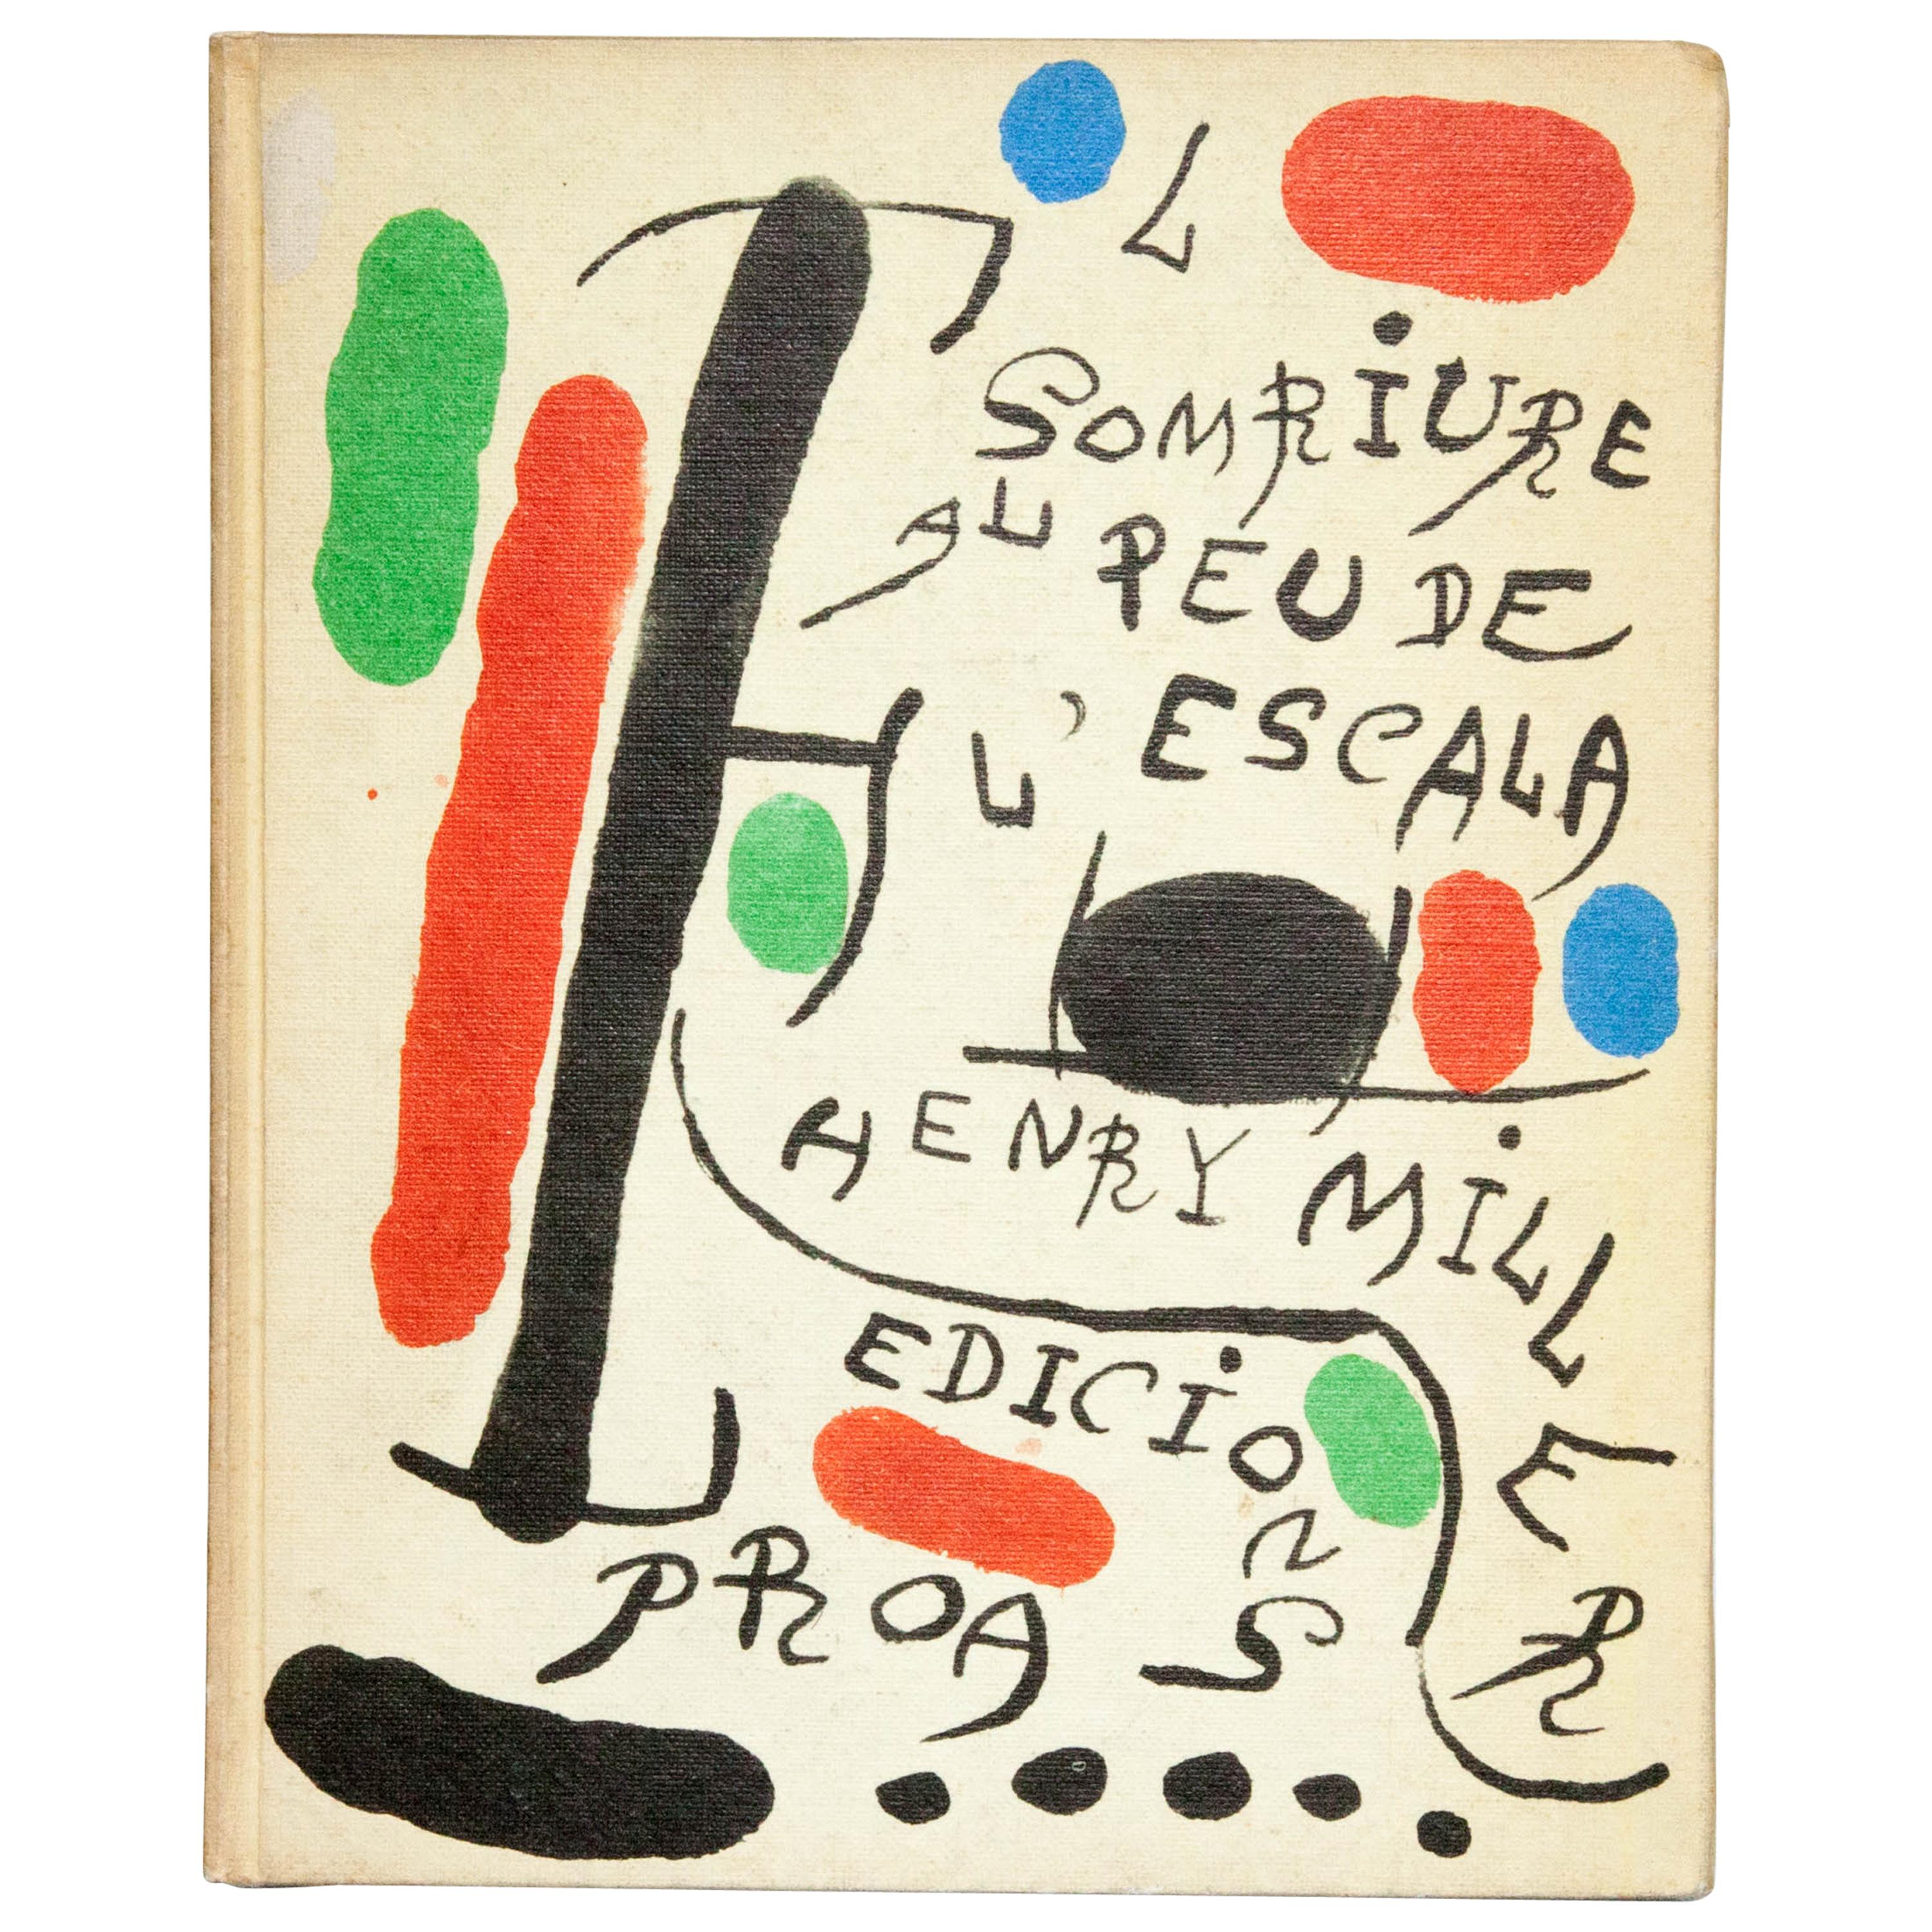 Henry Miller & Joan Miró "El Somriure al Peu de l'Escala" 1970 Book